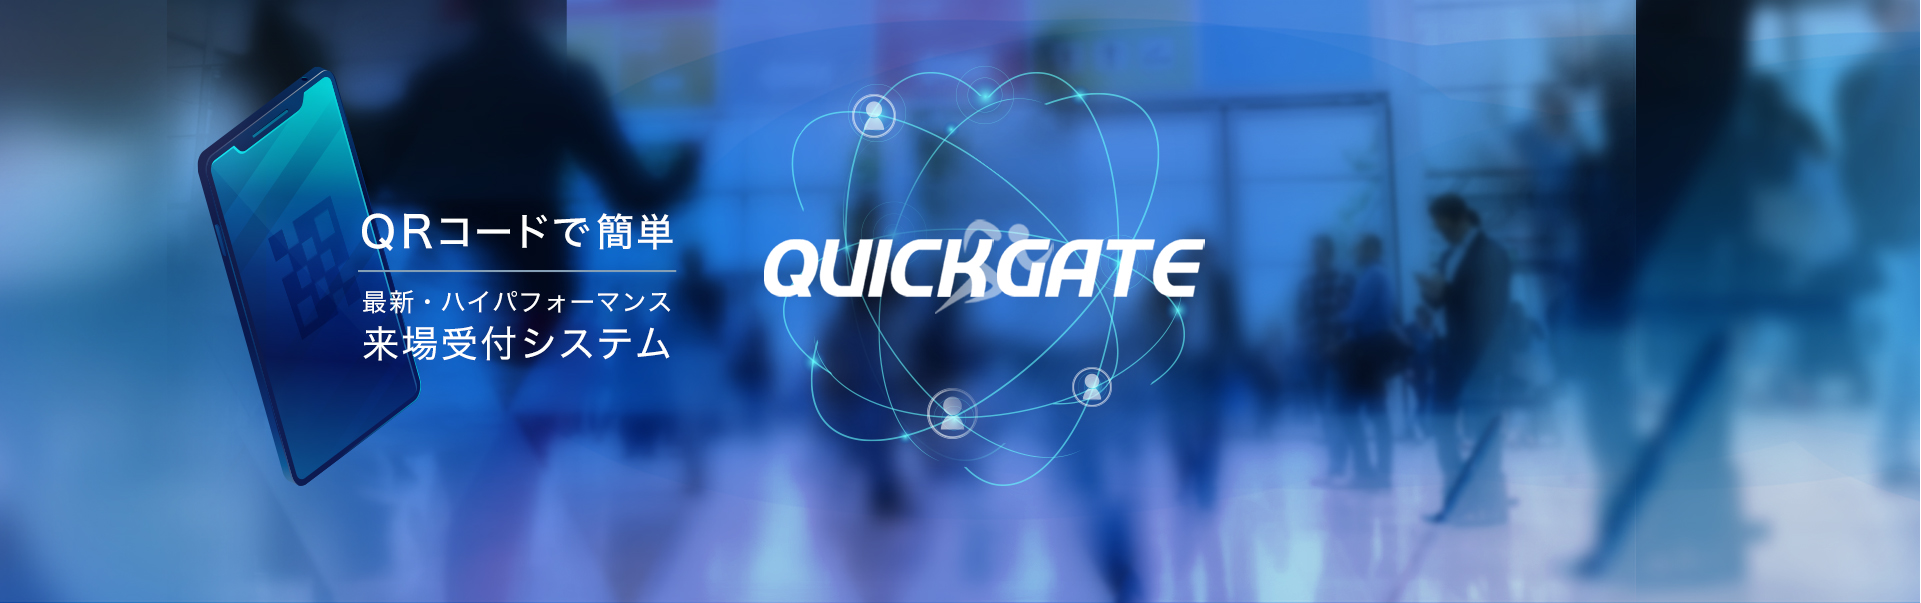 QuickGate製品紹介画像